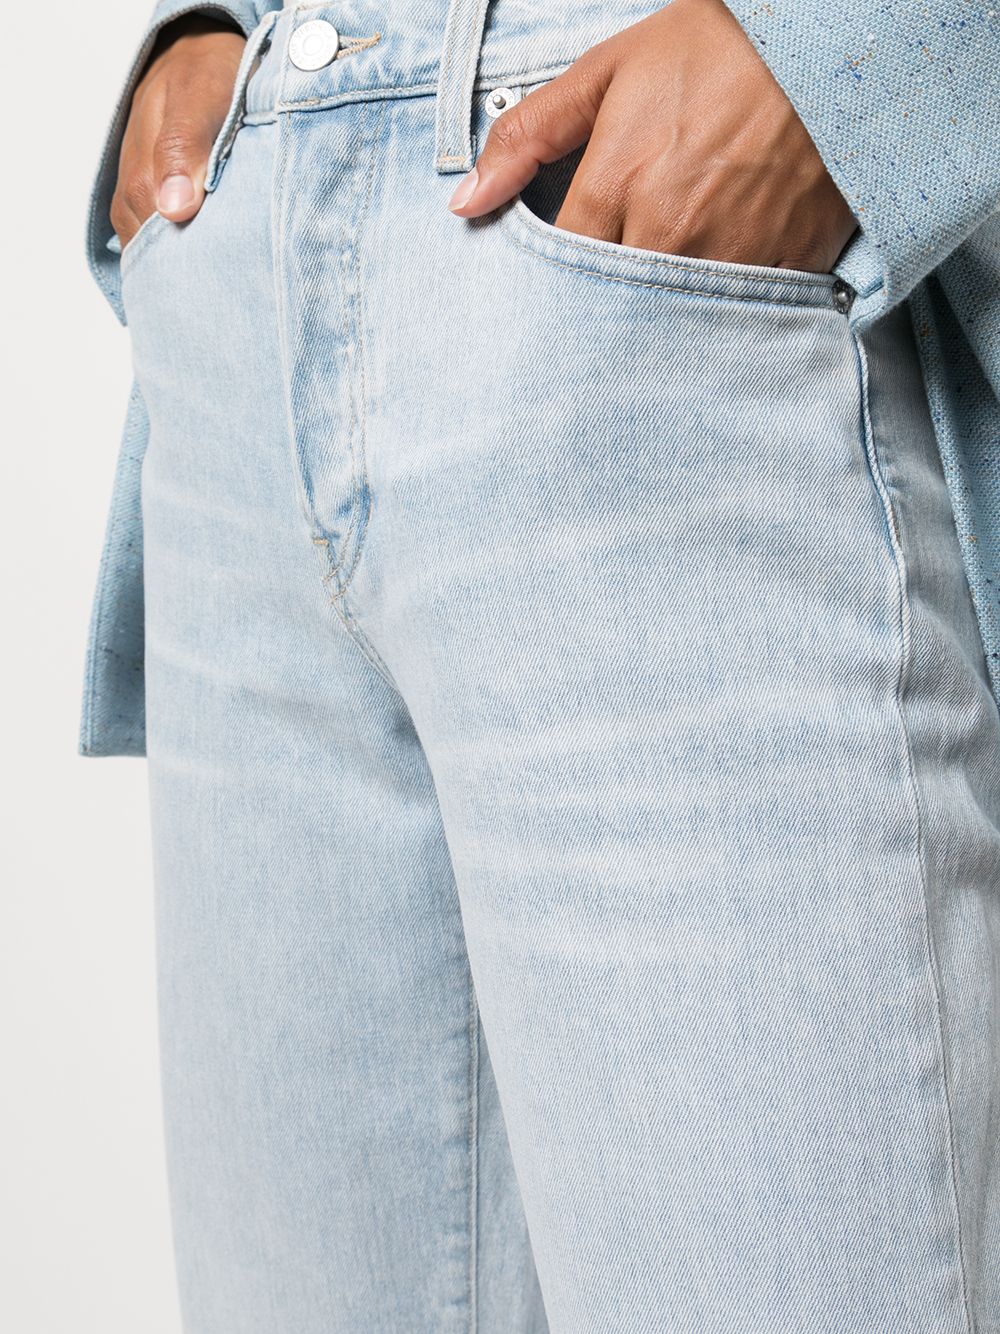 фото Veronica beard прямые джинсы blake с завышенной талией